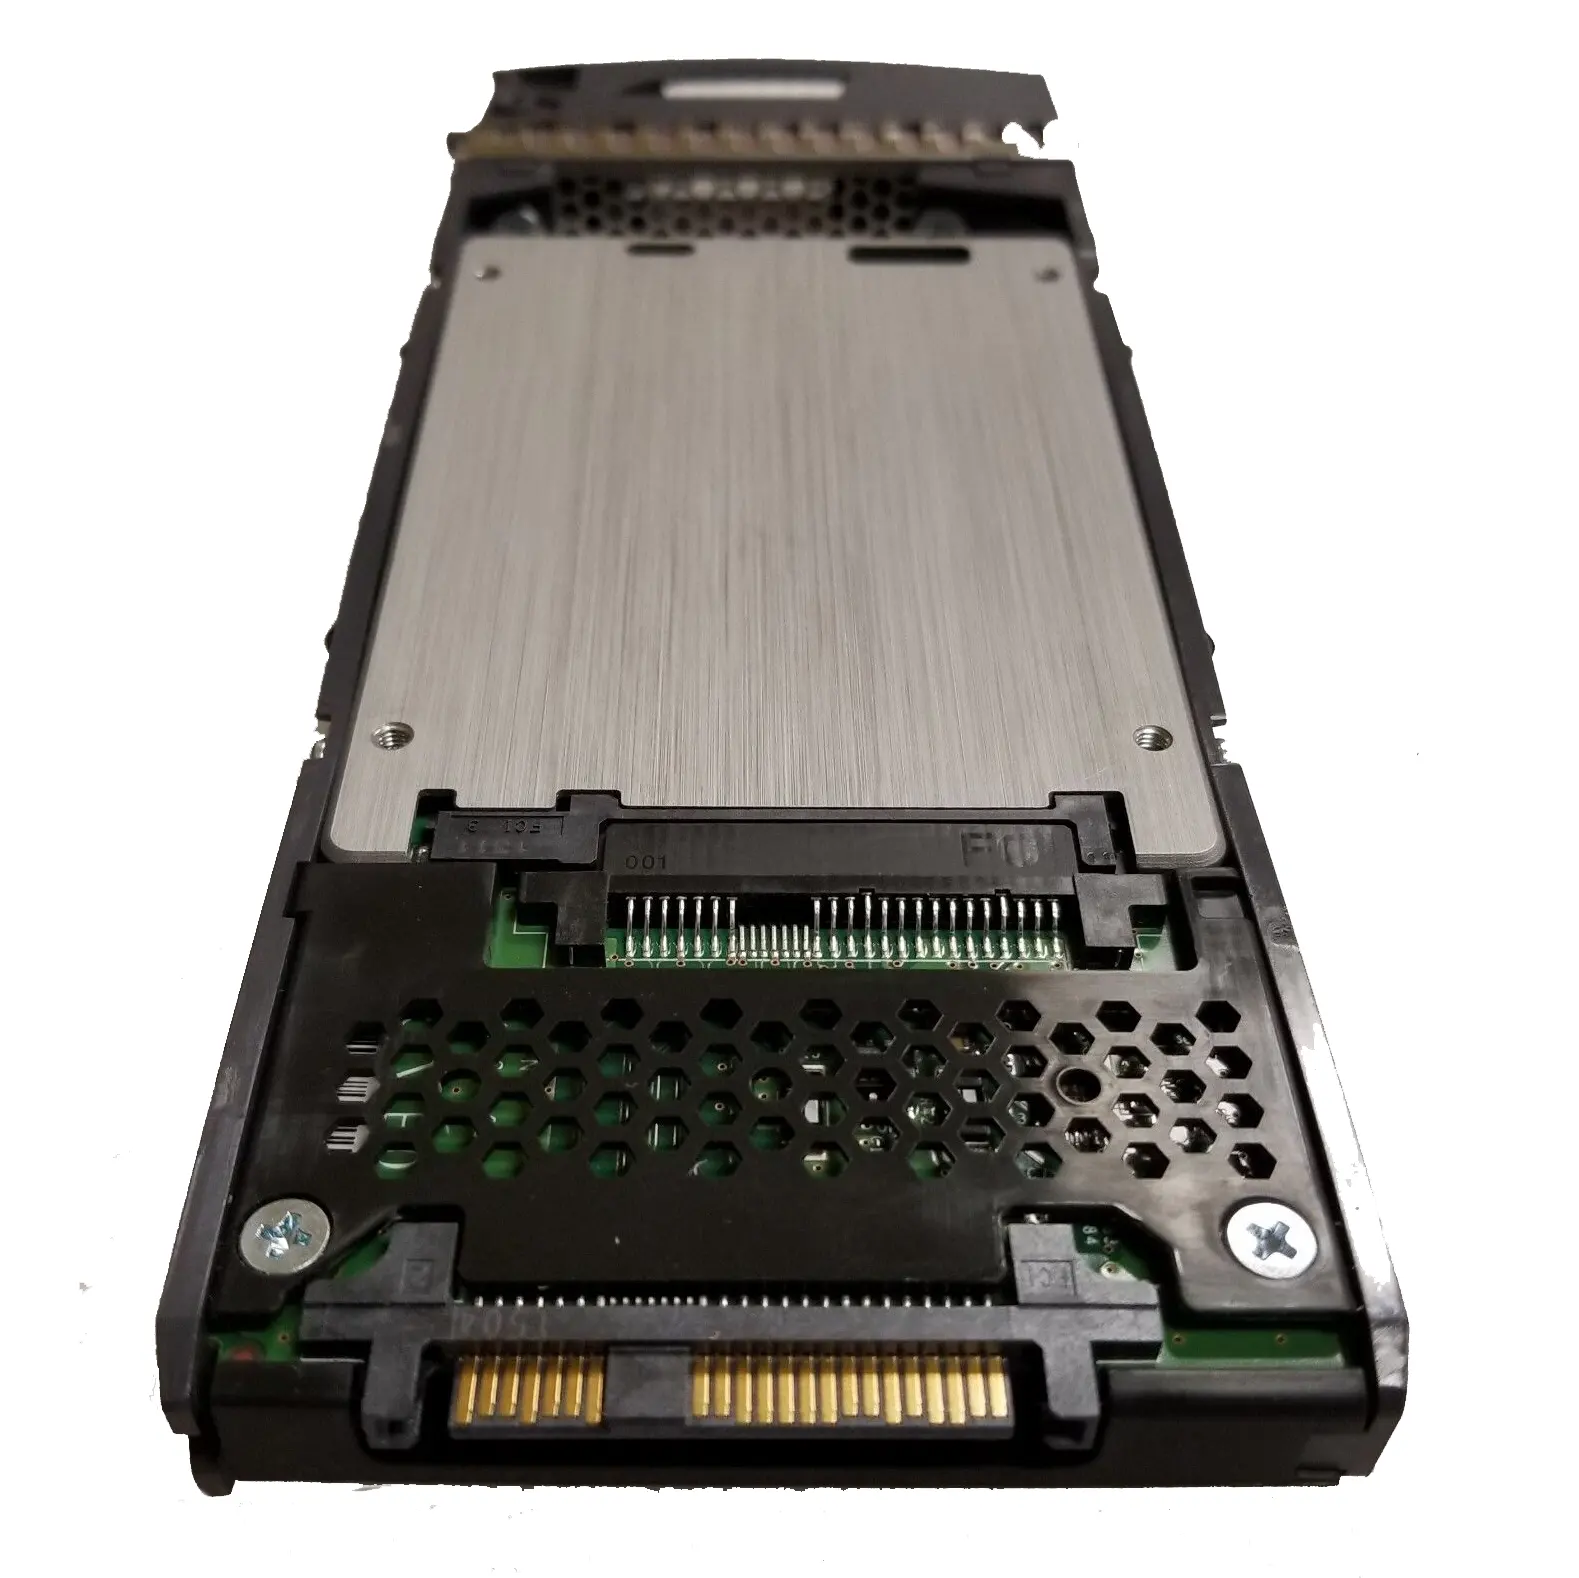 X447A-R6 NetApp 800 Go SAS 2,5 pouces 12 Go/s SSD Solid State Drive pour serveur